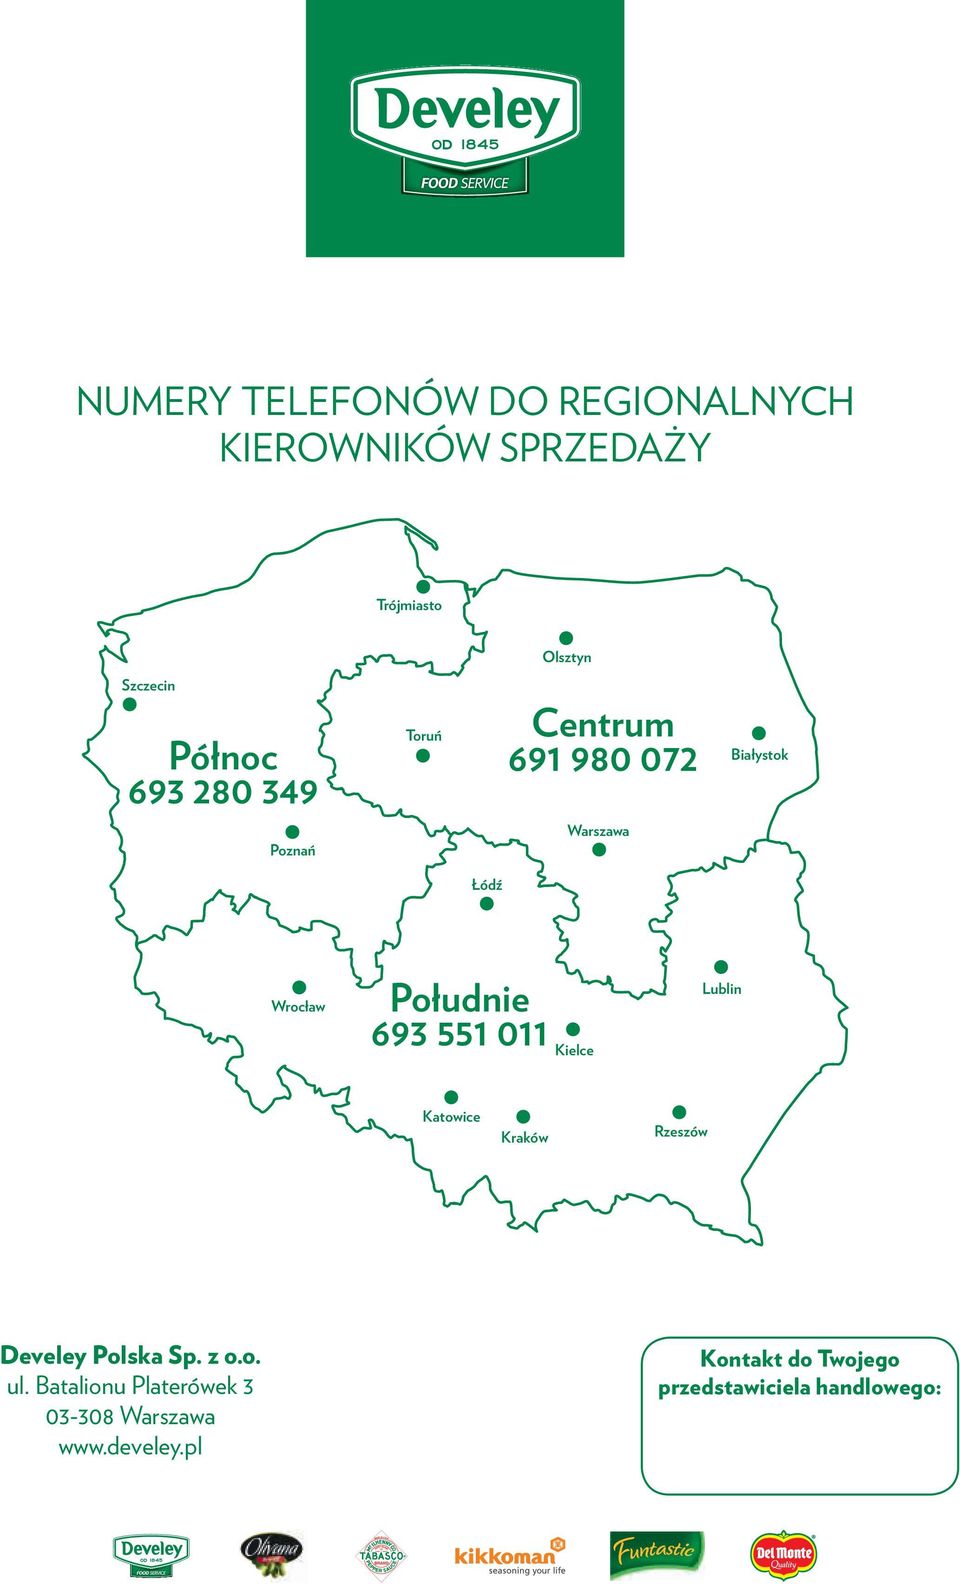 Południe 693 551 011 Kielce Lublin Katowice Kraków Rzeszów Develey Polska Sp. z o.o. ul.